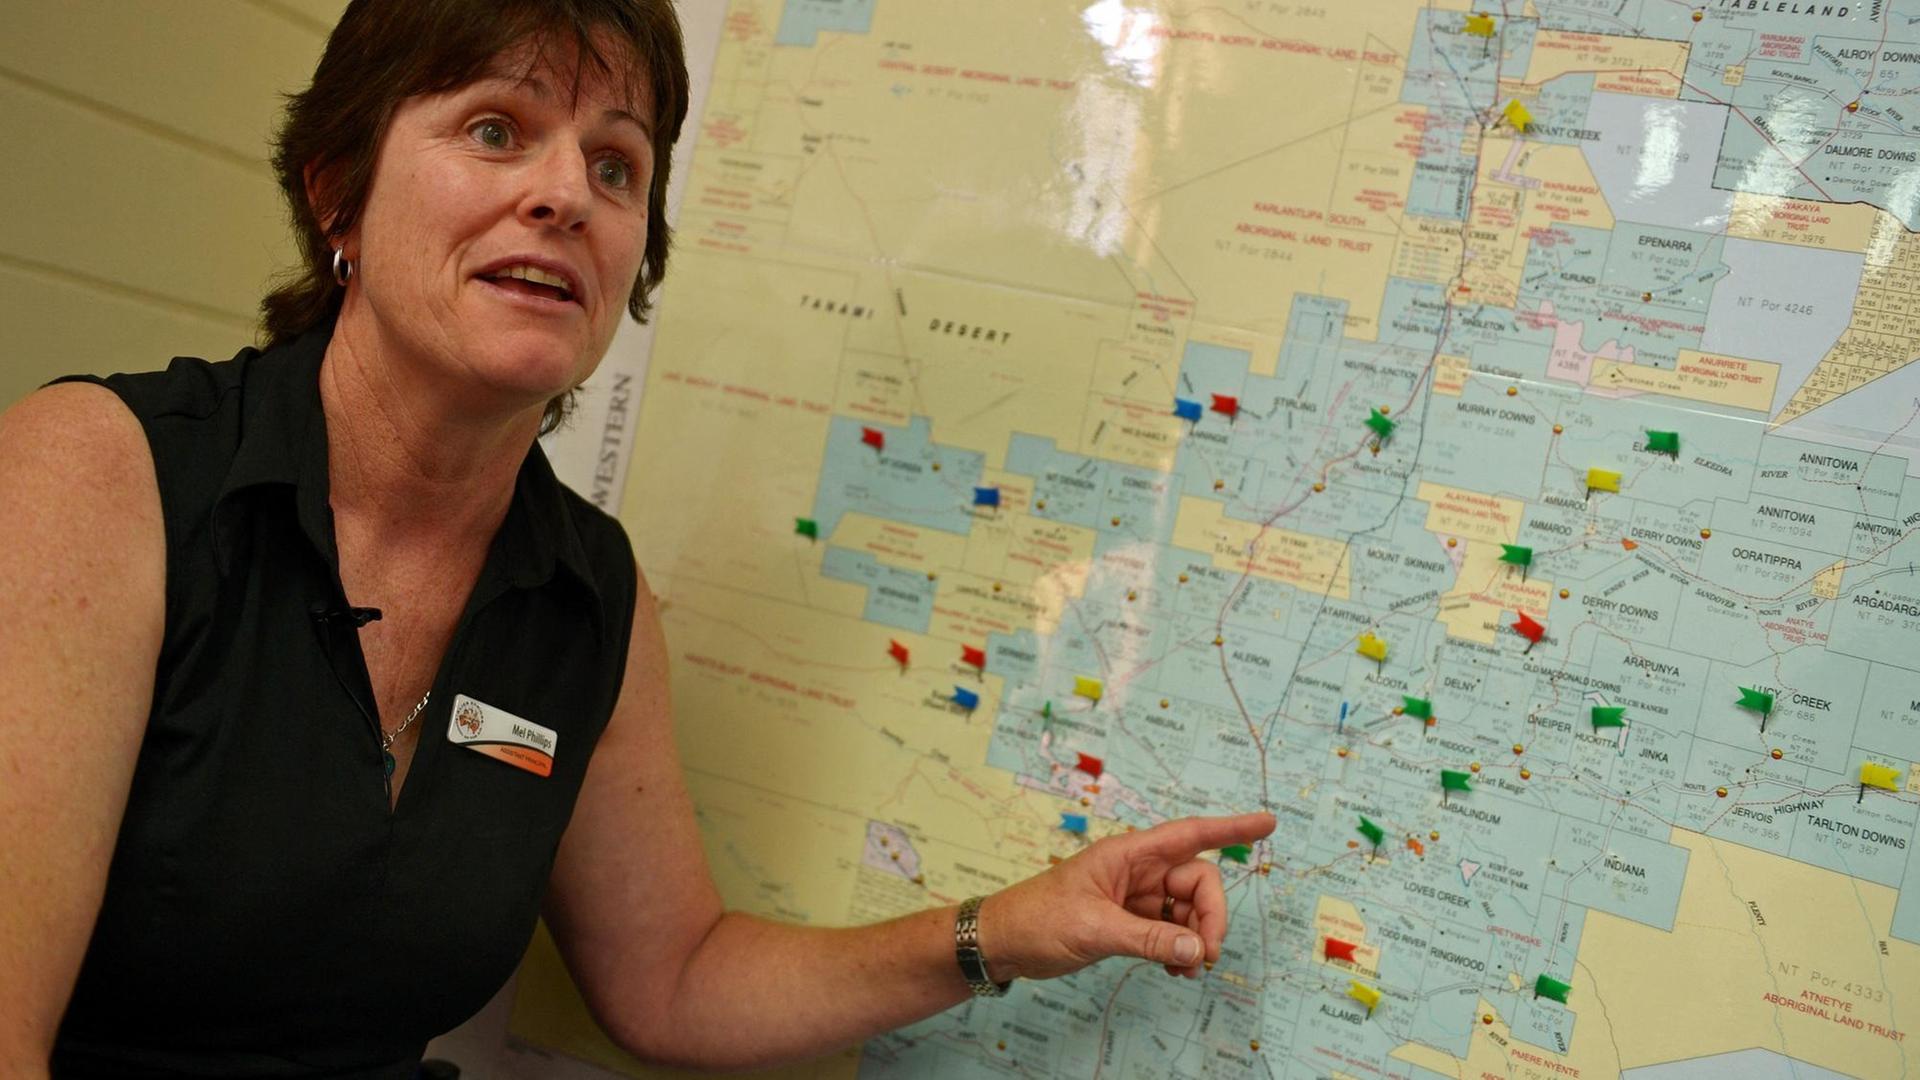 Mel Phillips von der Alice Springs "School of the Air" in Australien zeigt auf einer Landkarte die grossen Entfernungen der Schüler*innen der Schule. "The world's biggest classroom". Früher wurde über Funk unterrichtet, heute digital. Das Bild stammt aus dem Jahr 2013.